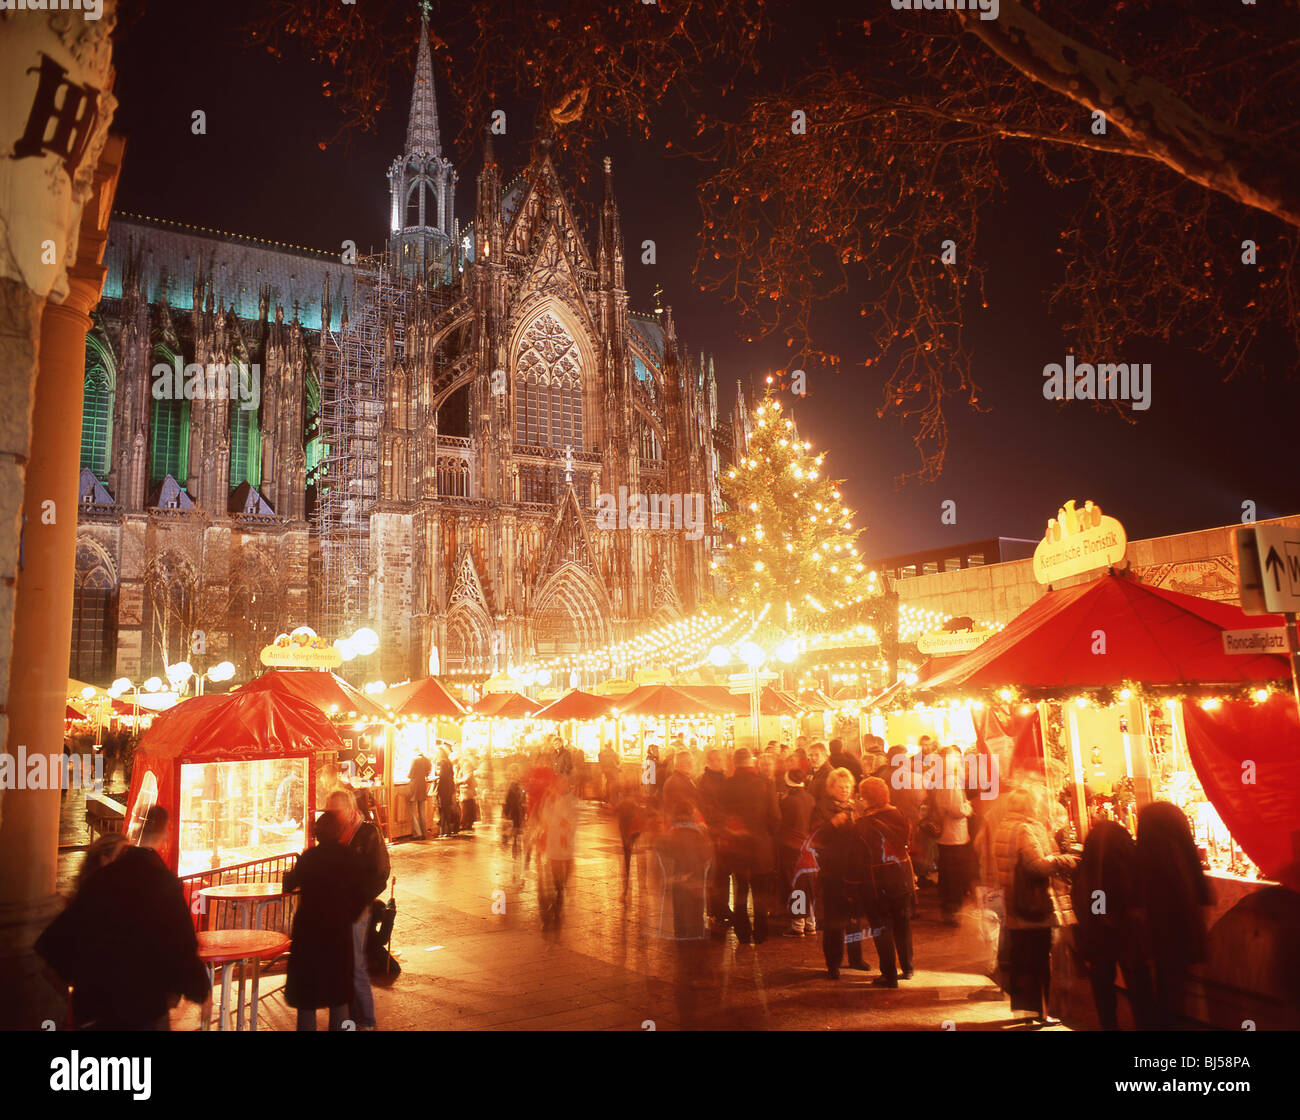 Alter Markt Christmas Market al crepuscolo, Colonia (Koln), Nordrhein-Westfalen, Repubblica federale di Germania Foto Stock